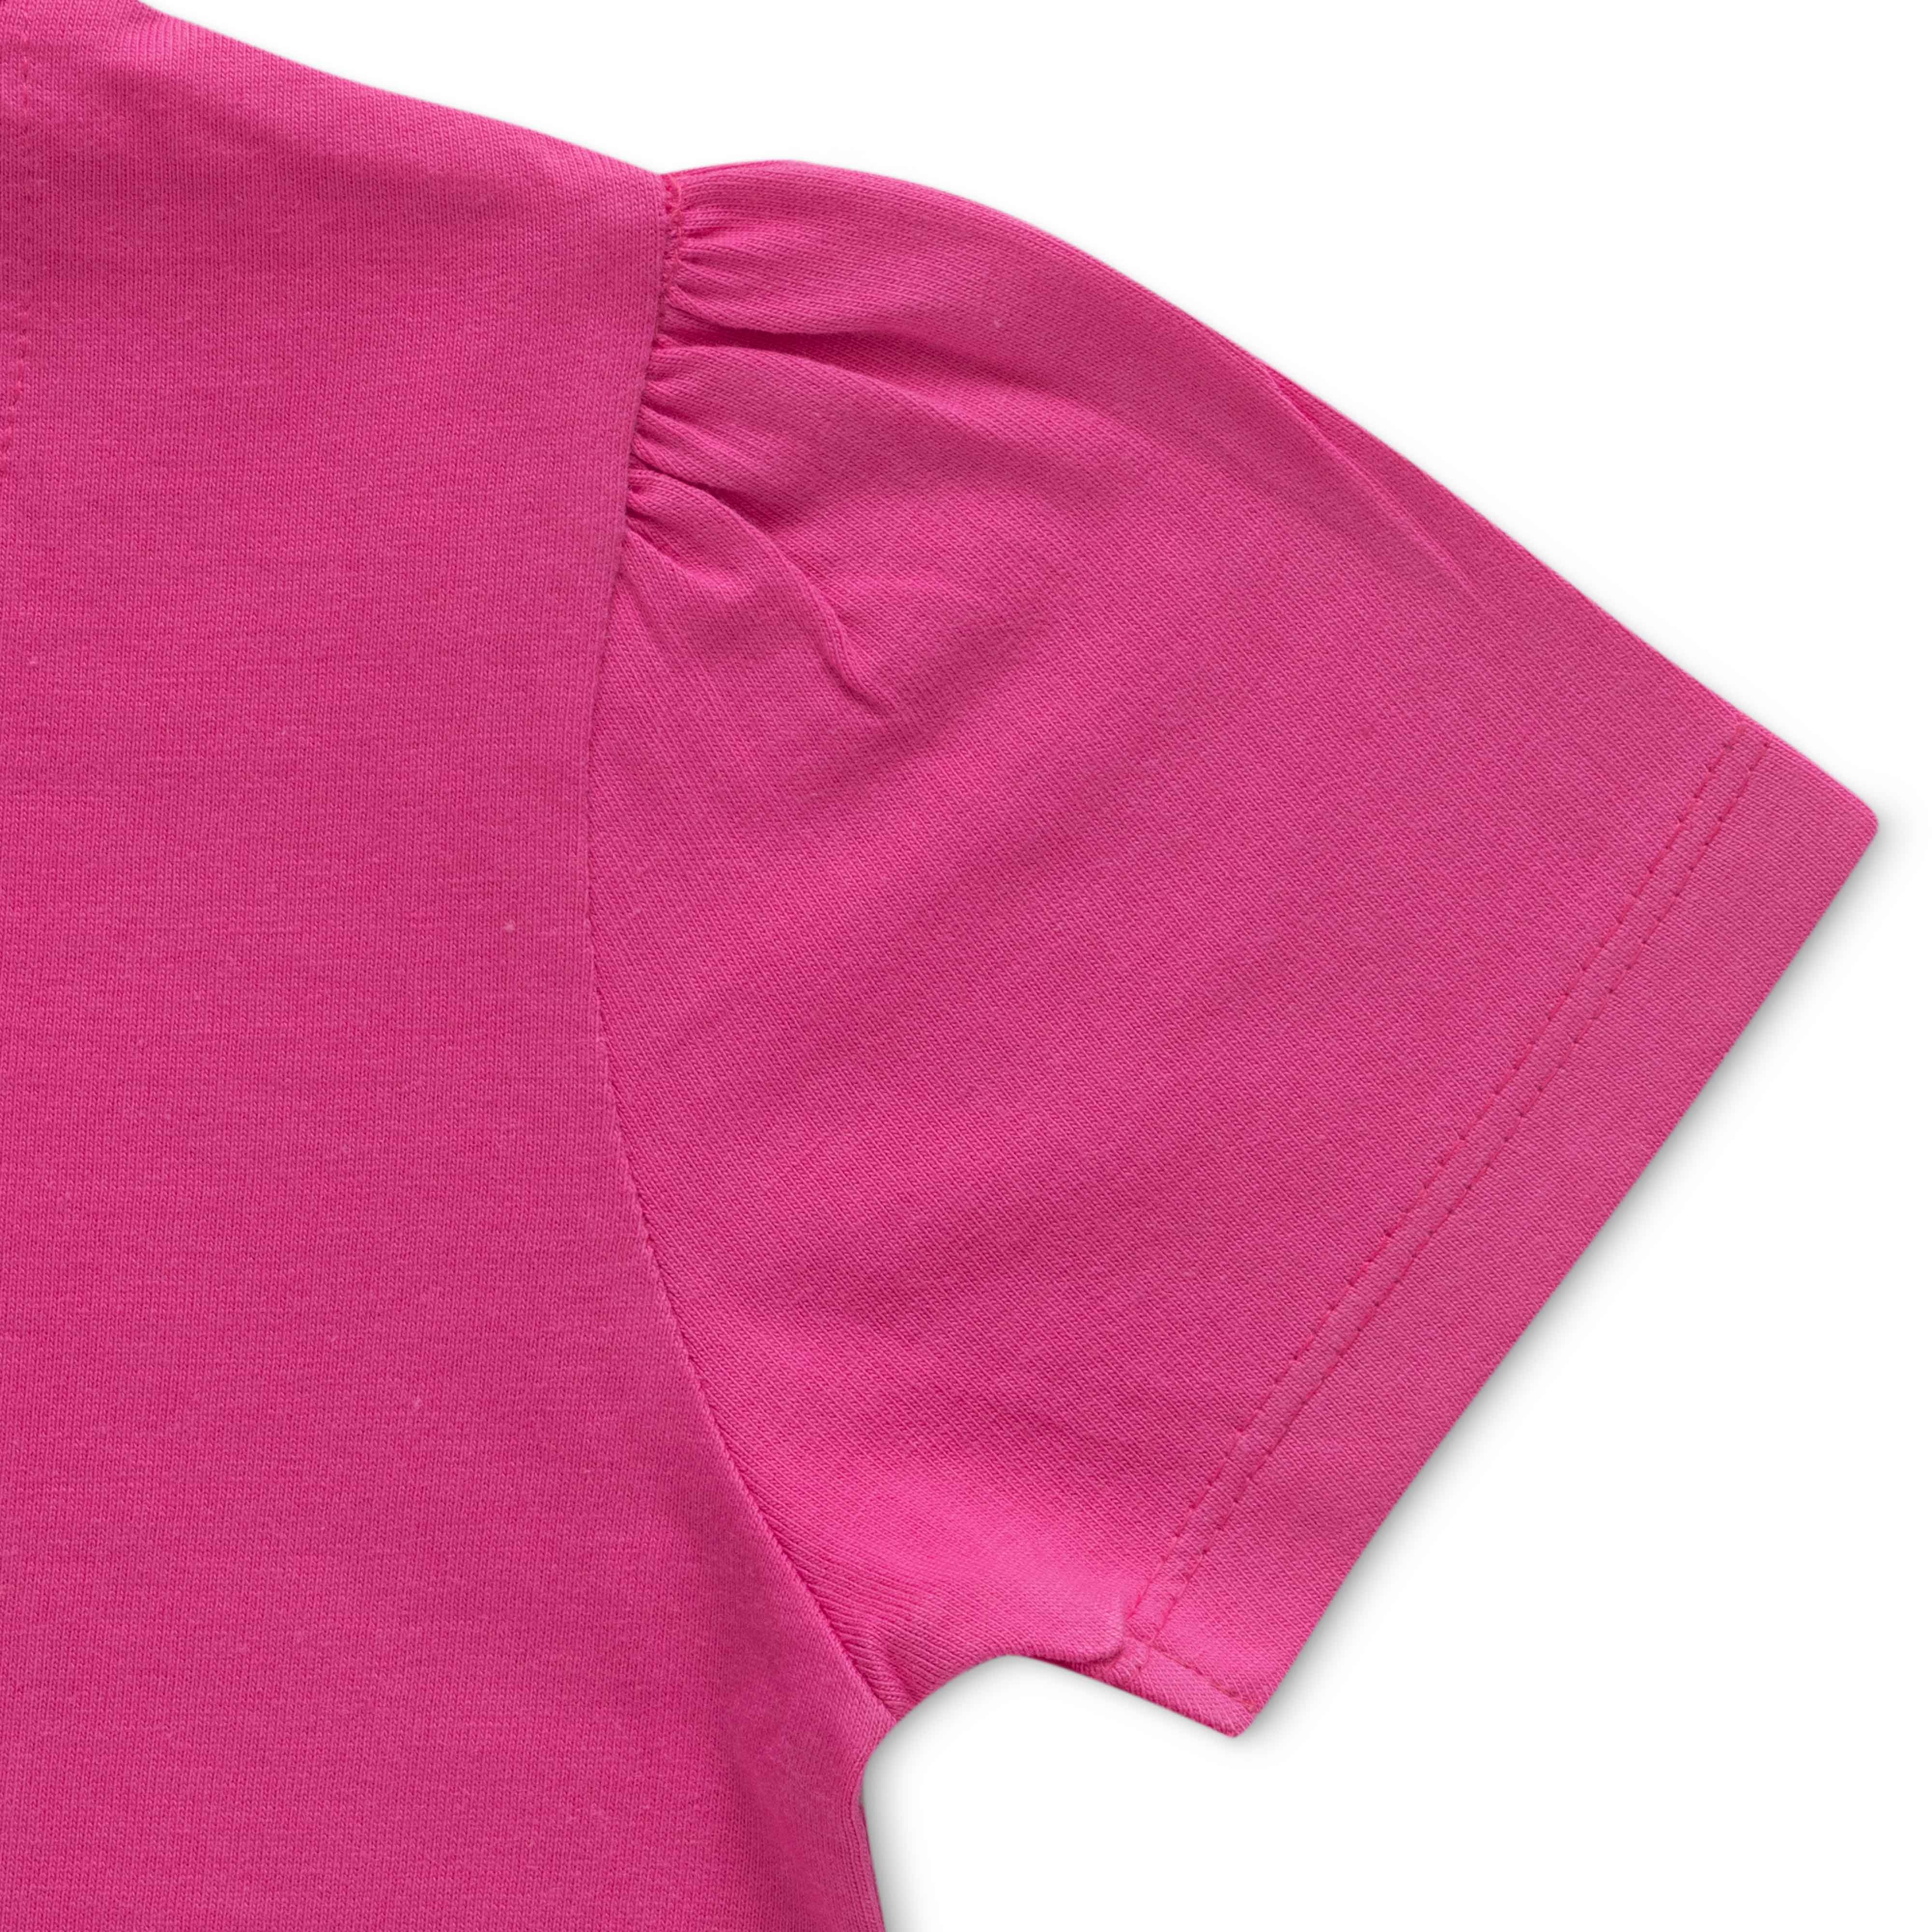 Girls Patch work Lamp & Printed Bio-Washed T-Shirt - Pink